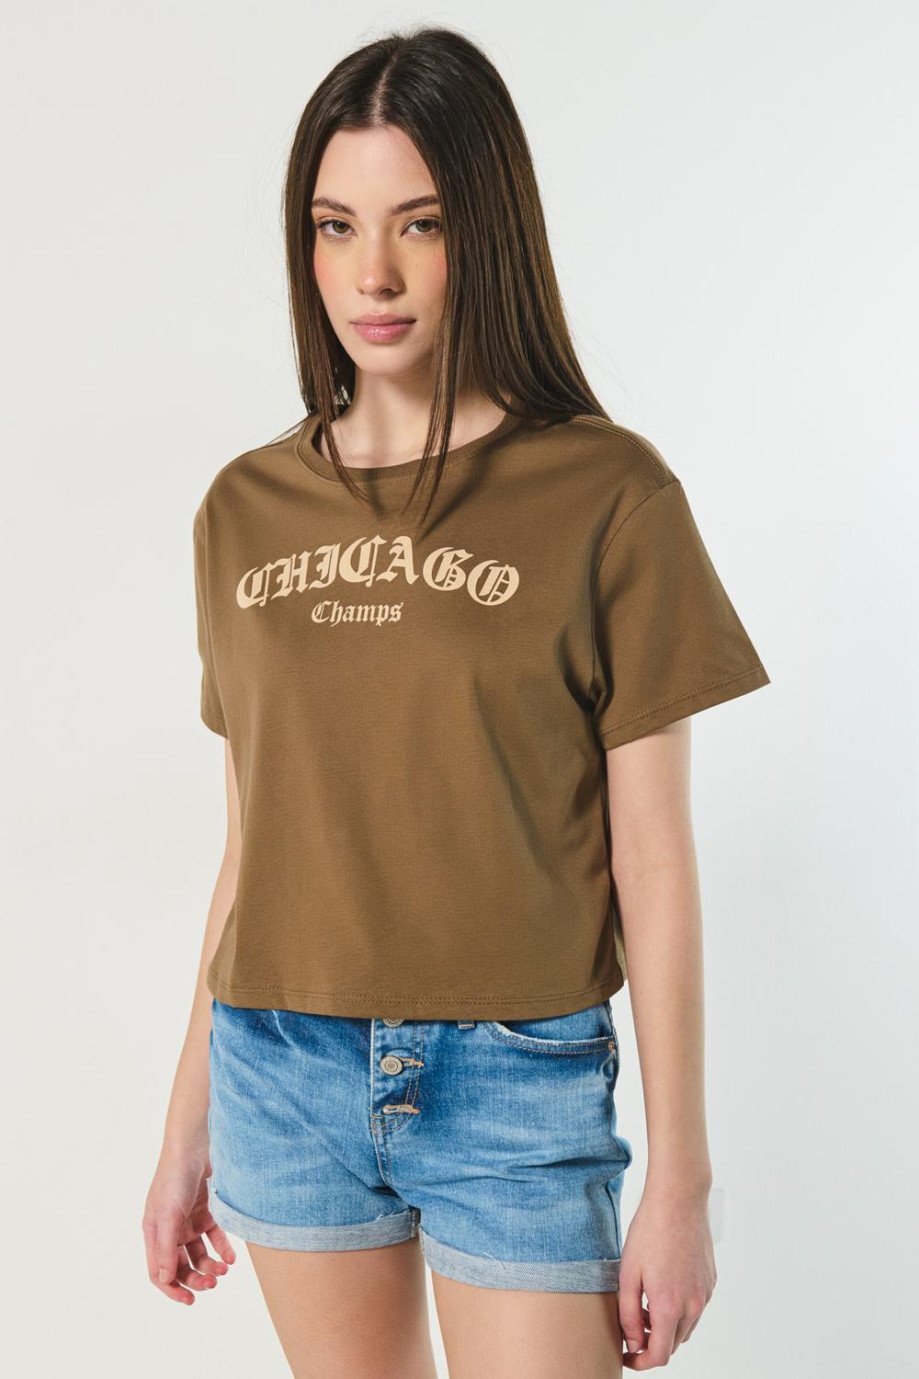 Camiseta café crop top con texto college de Chicago